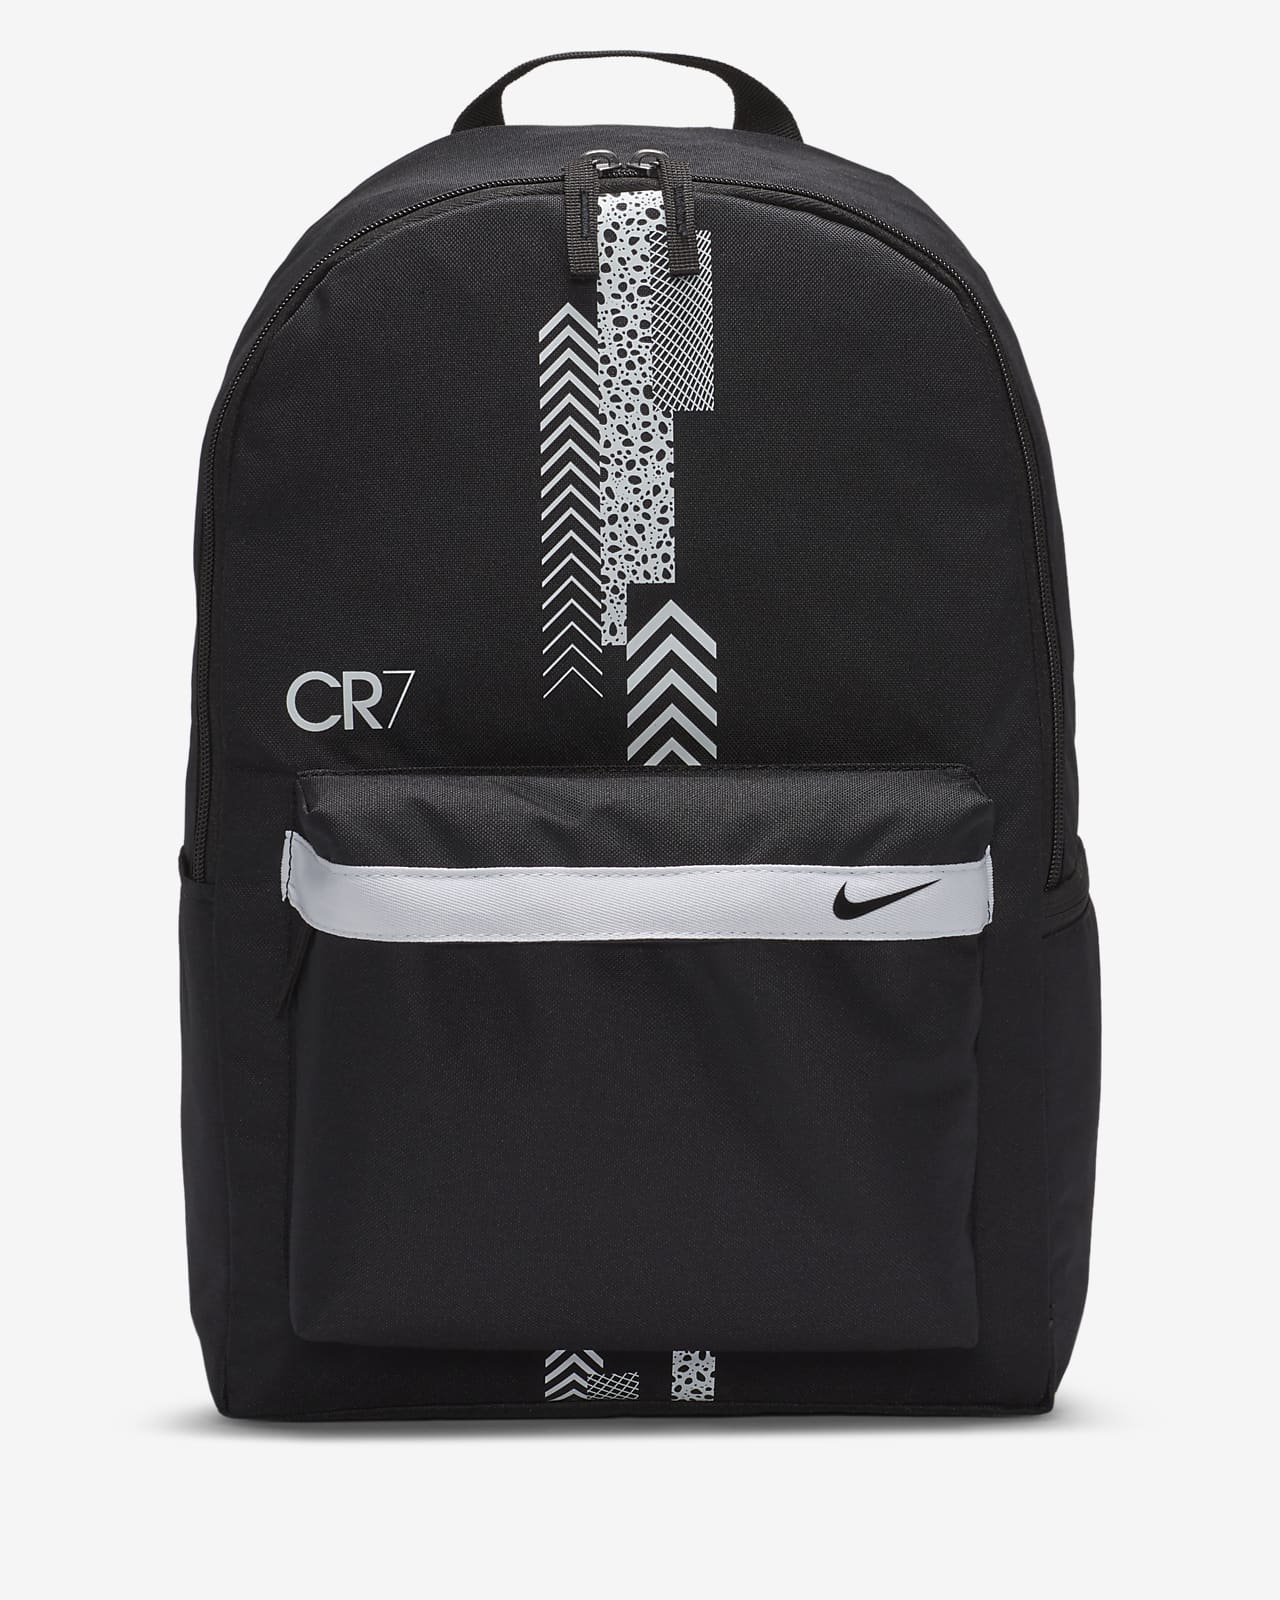 nike cr7 backpack